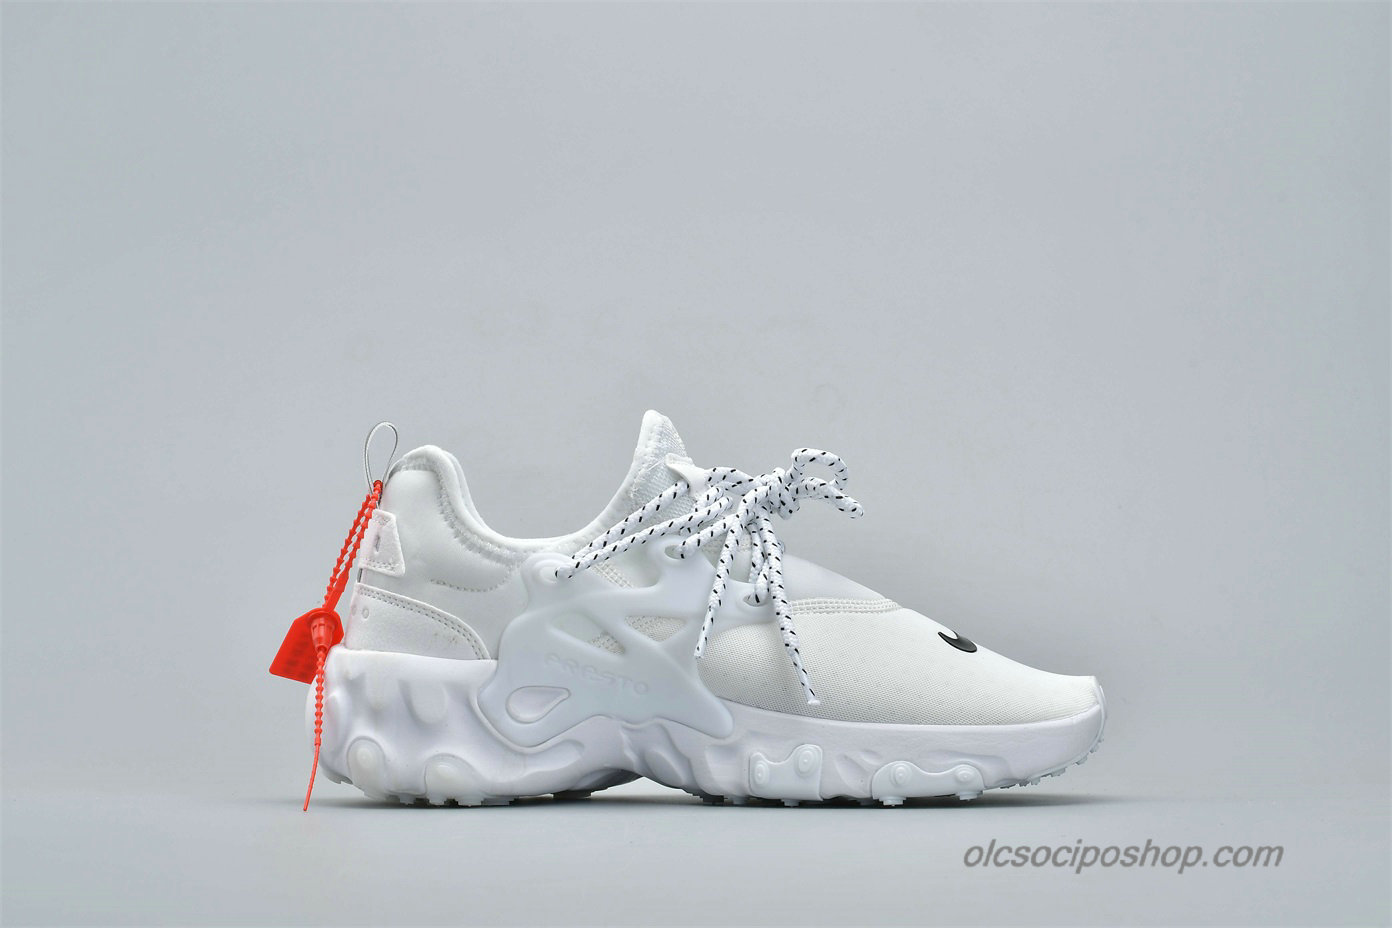 Nike Presto React Fehér/Fekete Cipők (AV2605-100)